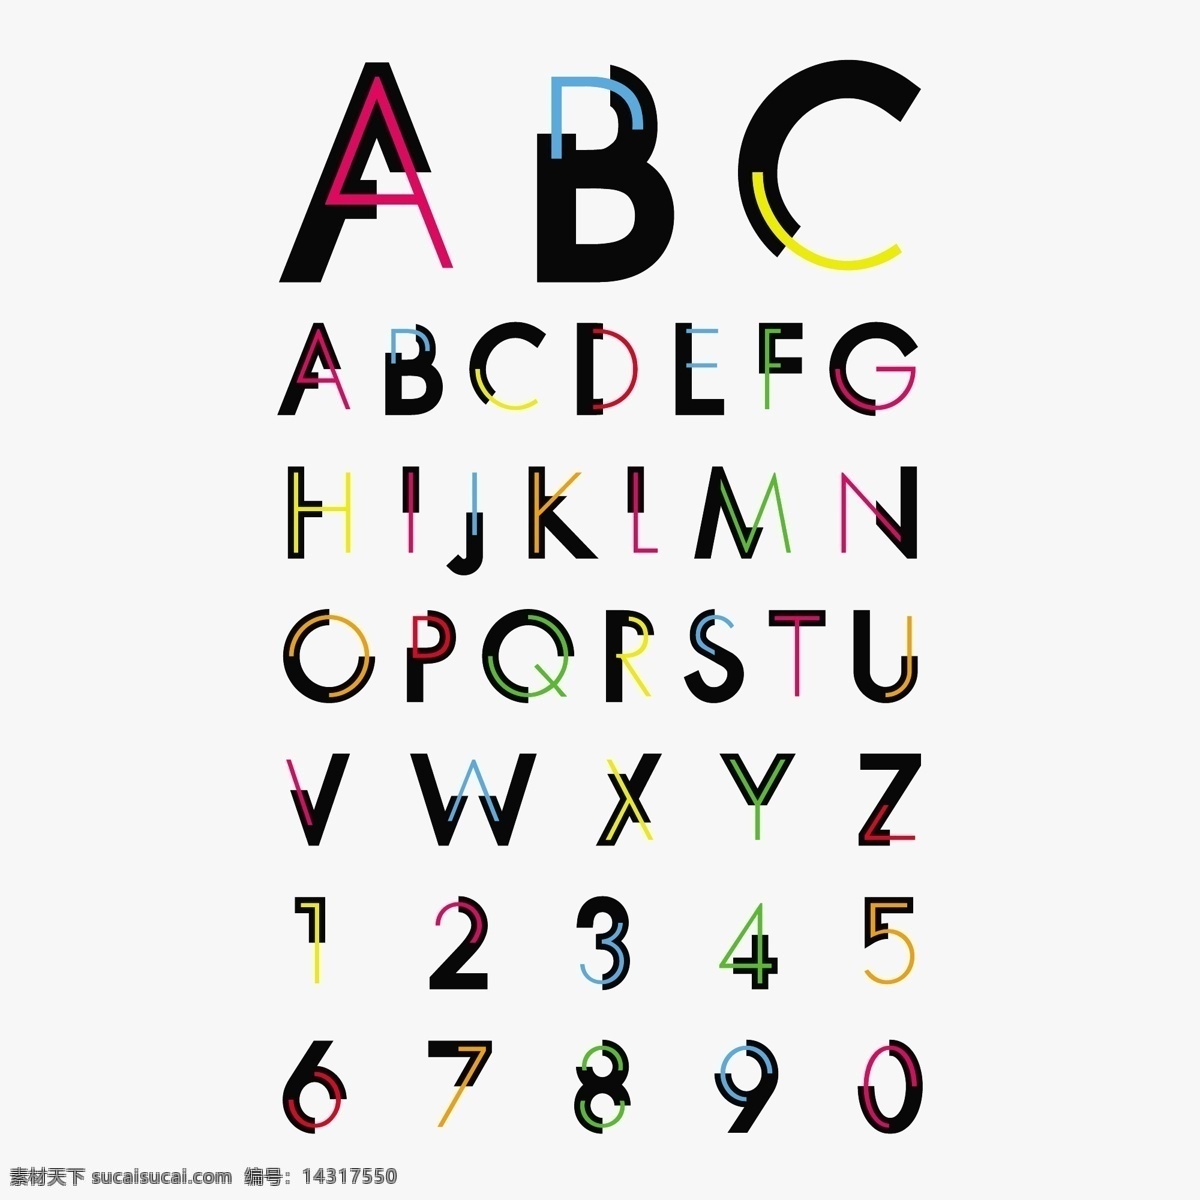 英文字母 字母设计 字母 数字 手绘字母 英文 拼音 字母表 创意字母 时尚字母 时尚 手绘 装饰 字母主题 矢量